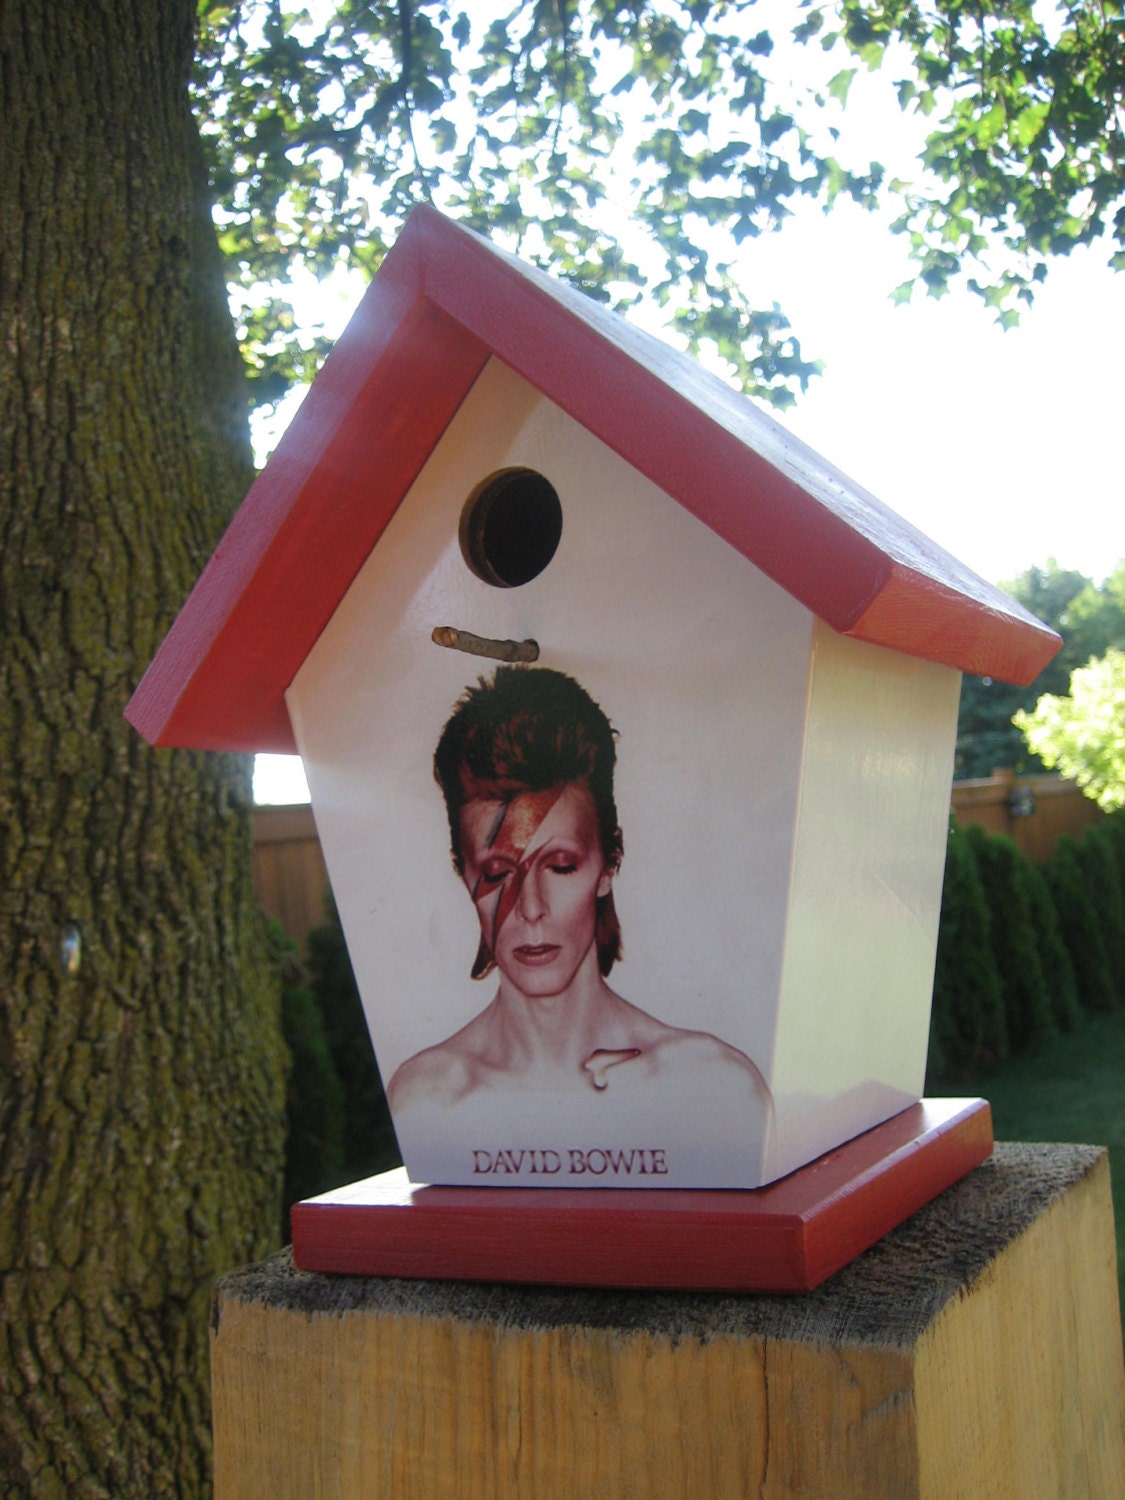 David Bowie Birdhouse/Feeder